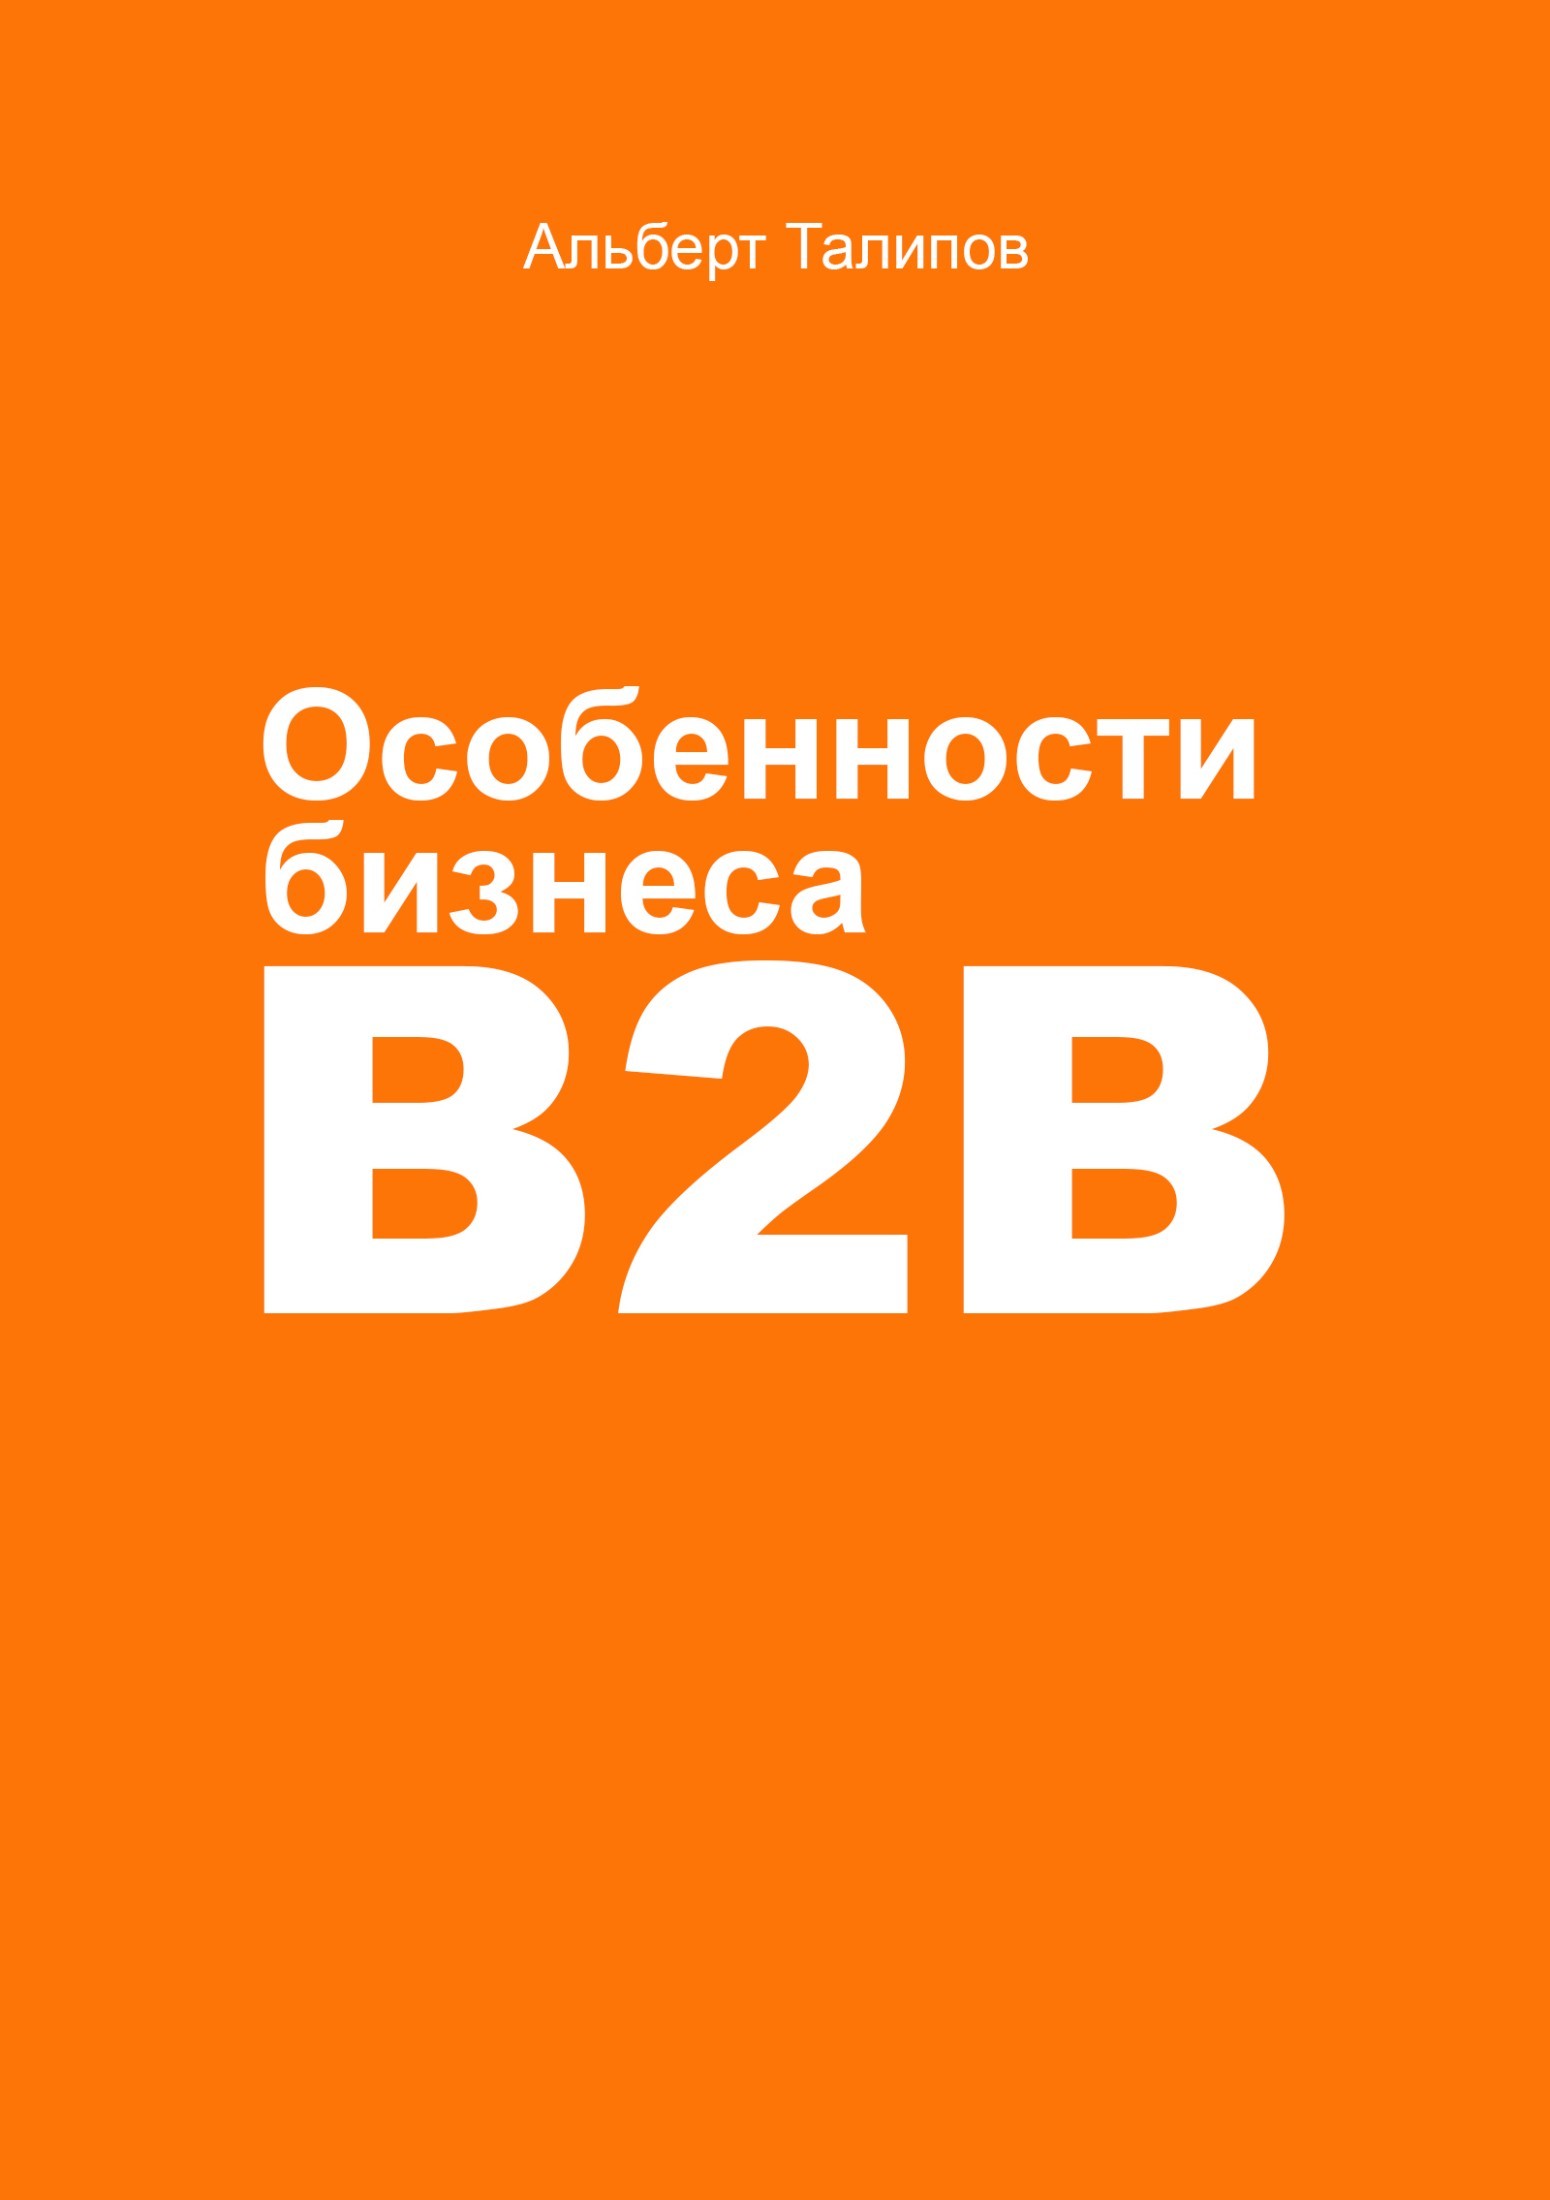 Книга Особенности бизнеса b2b из серии , созданная Альберт Талипов, может относится к жанру Маркетинг, PR, реклама, Маркетинг, PR, реклама, Маркетинг, PR, реклама, О бизнесе популярно. Стоимость электронной книги Особенности бизнеса b2b с идентификатором 25290414 составляет 79.99 руб.